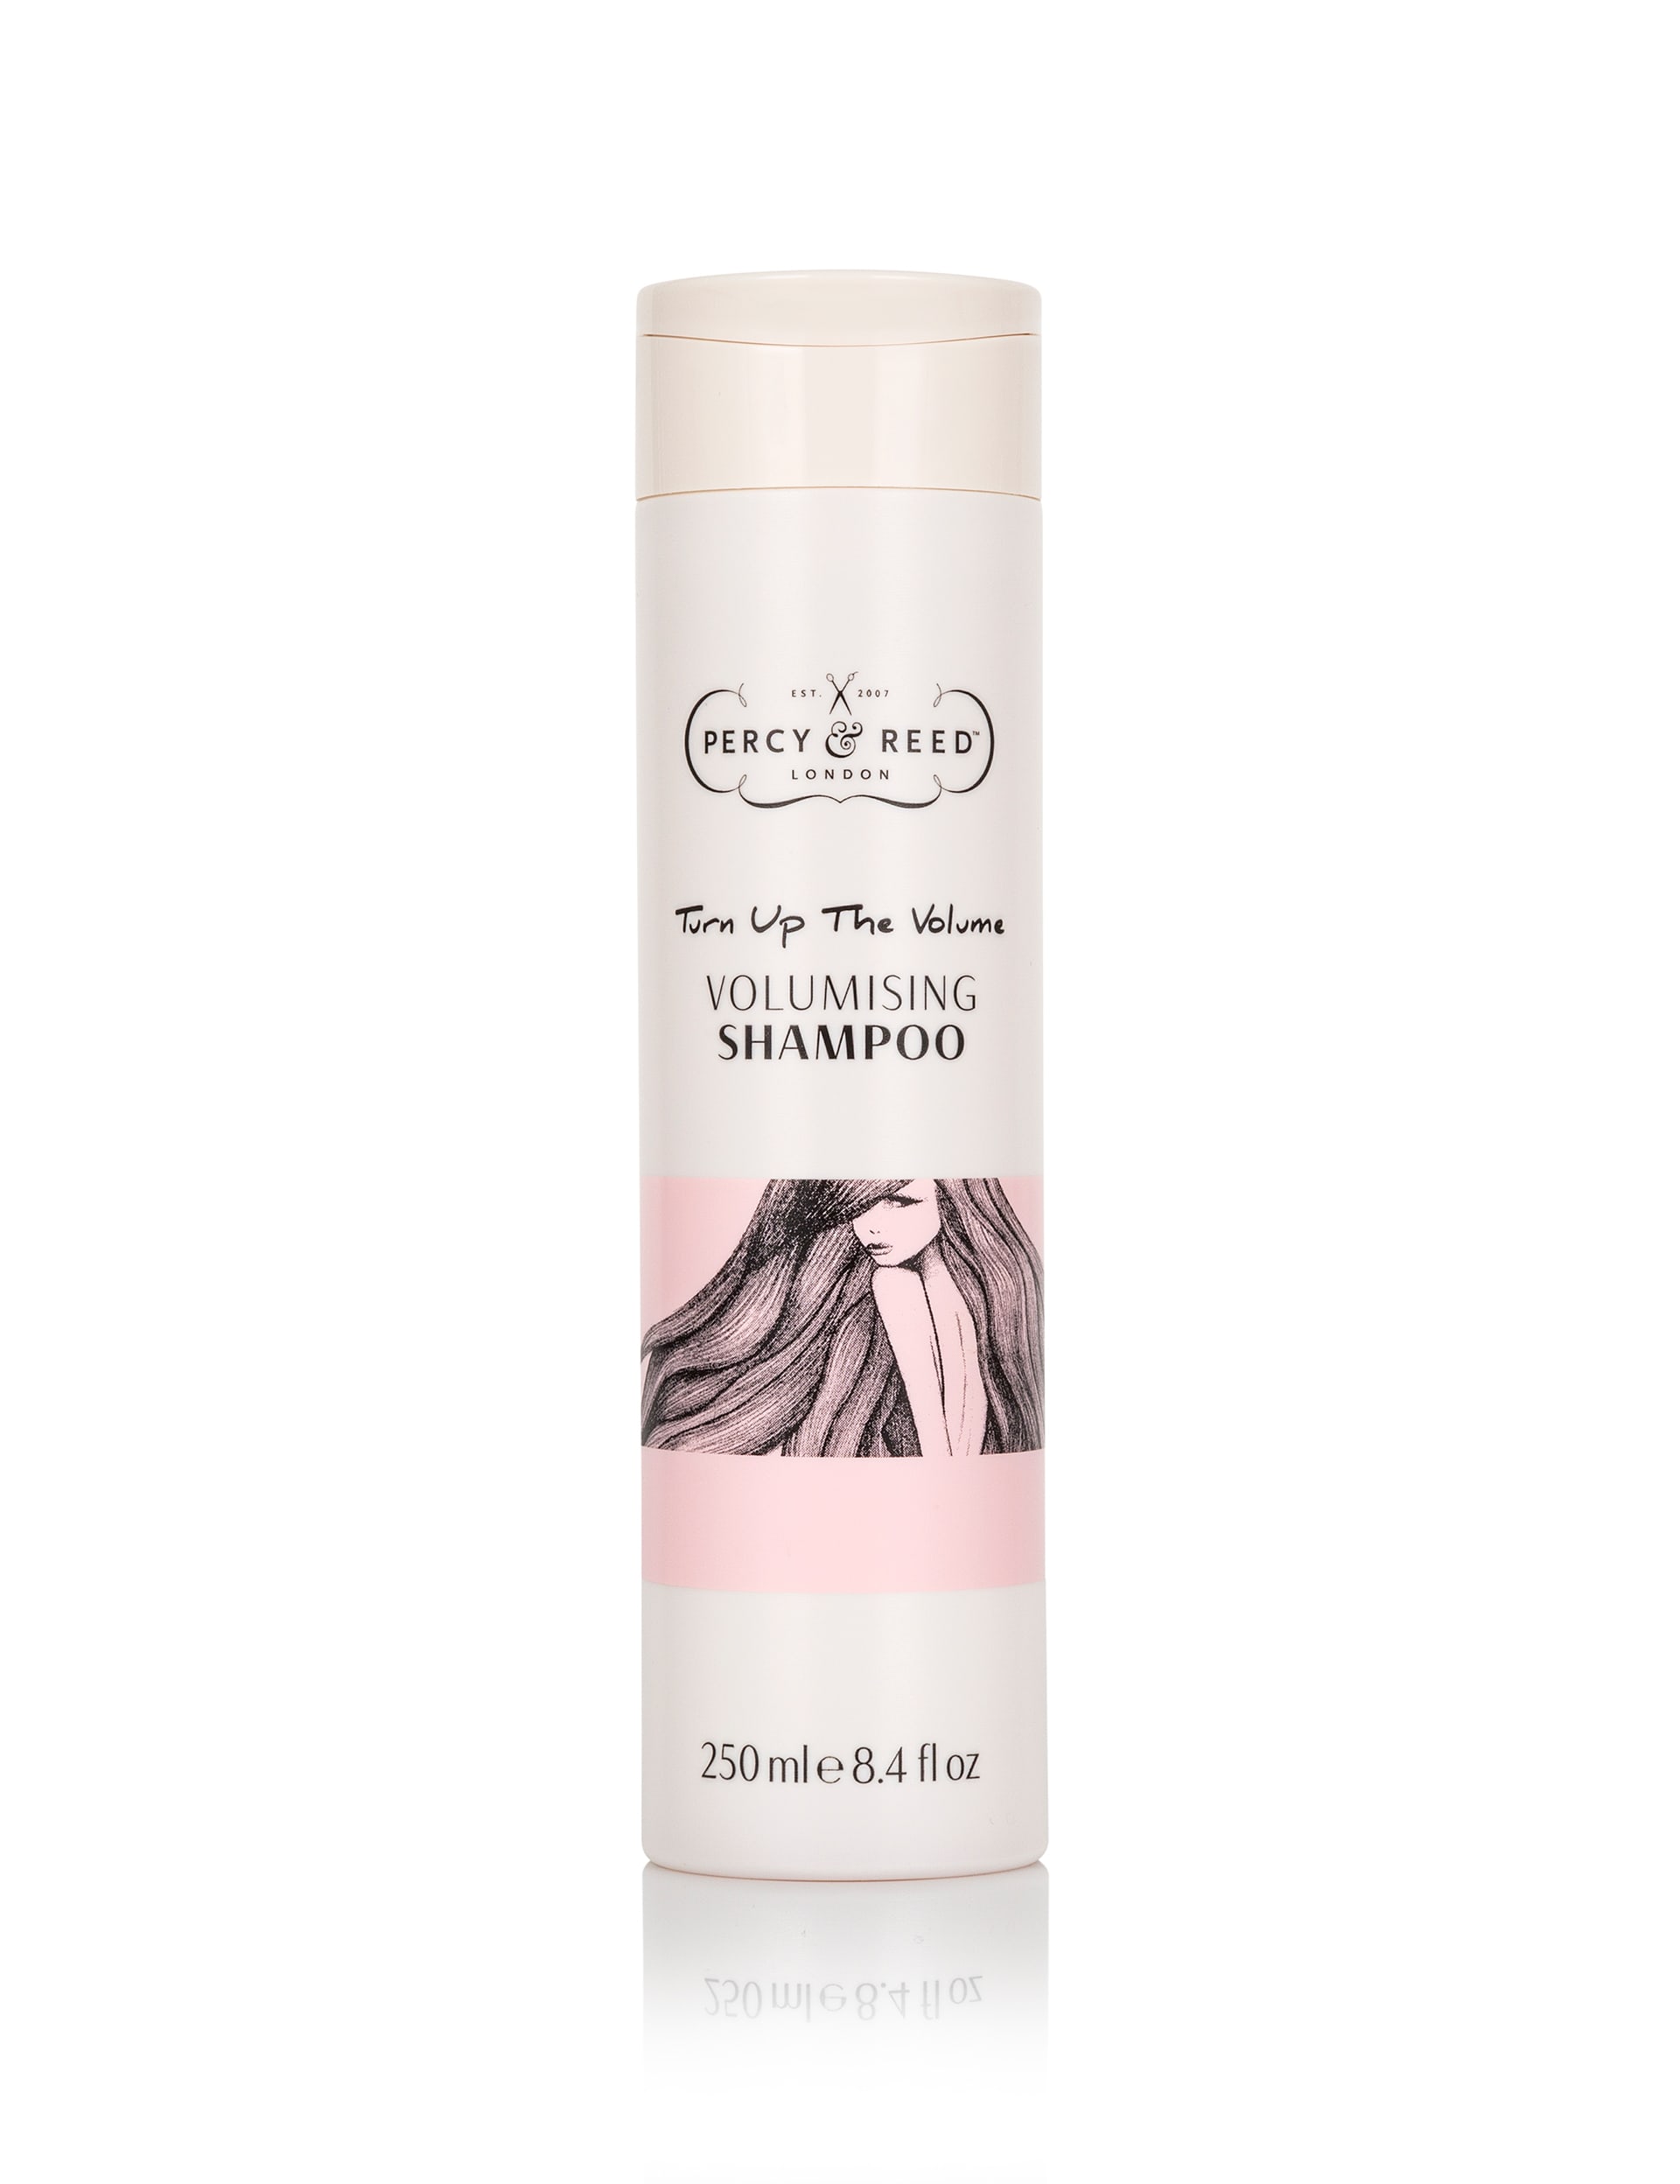 Turn Up The Volume Volumising Shampoo 250ml